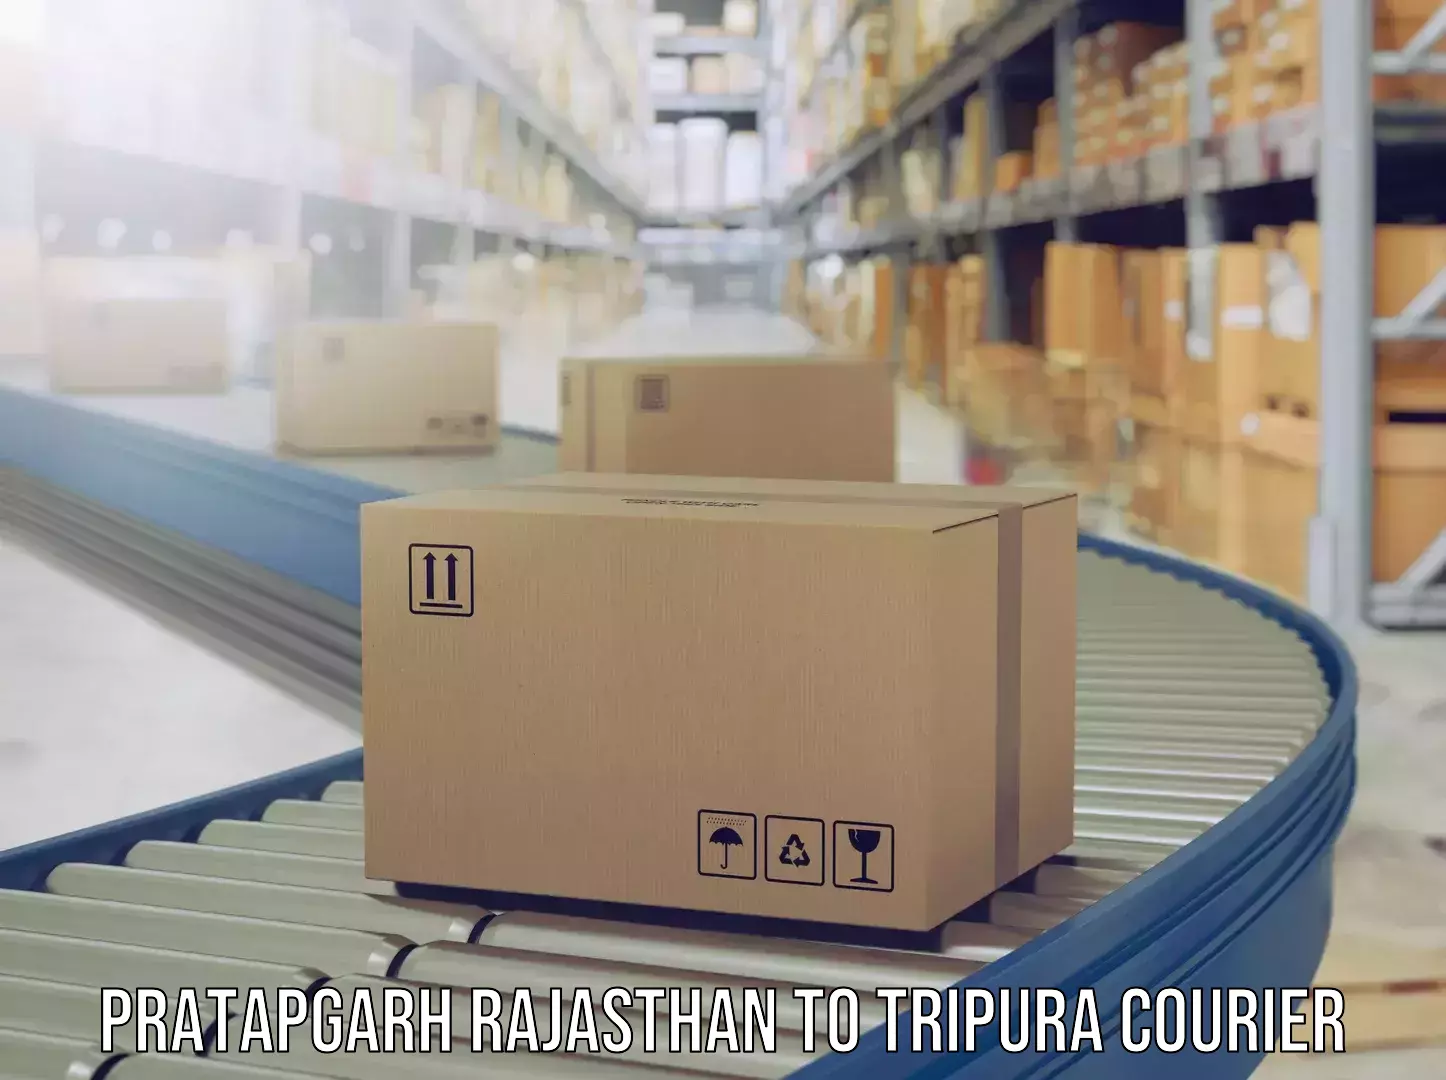 Luggage shipping trends Pratapgarh Rajasthan to Udaipur Tripura